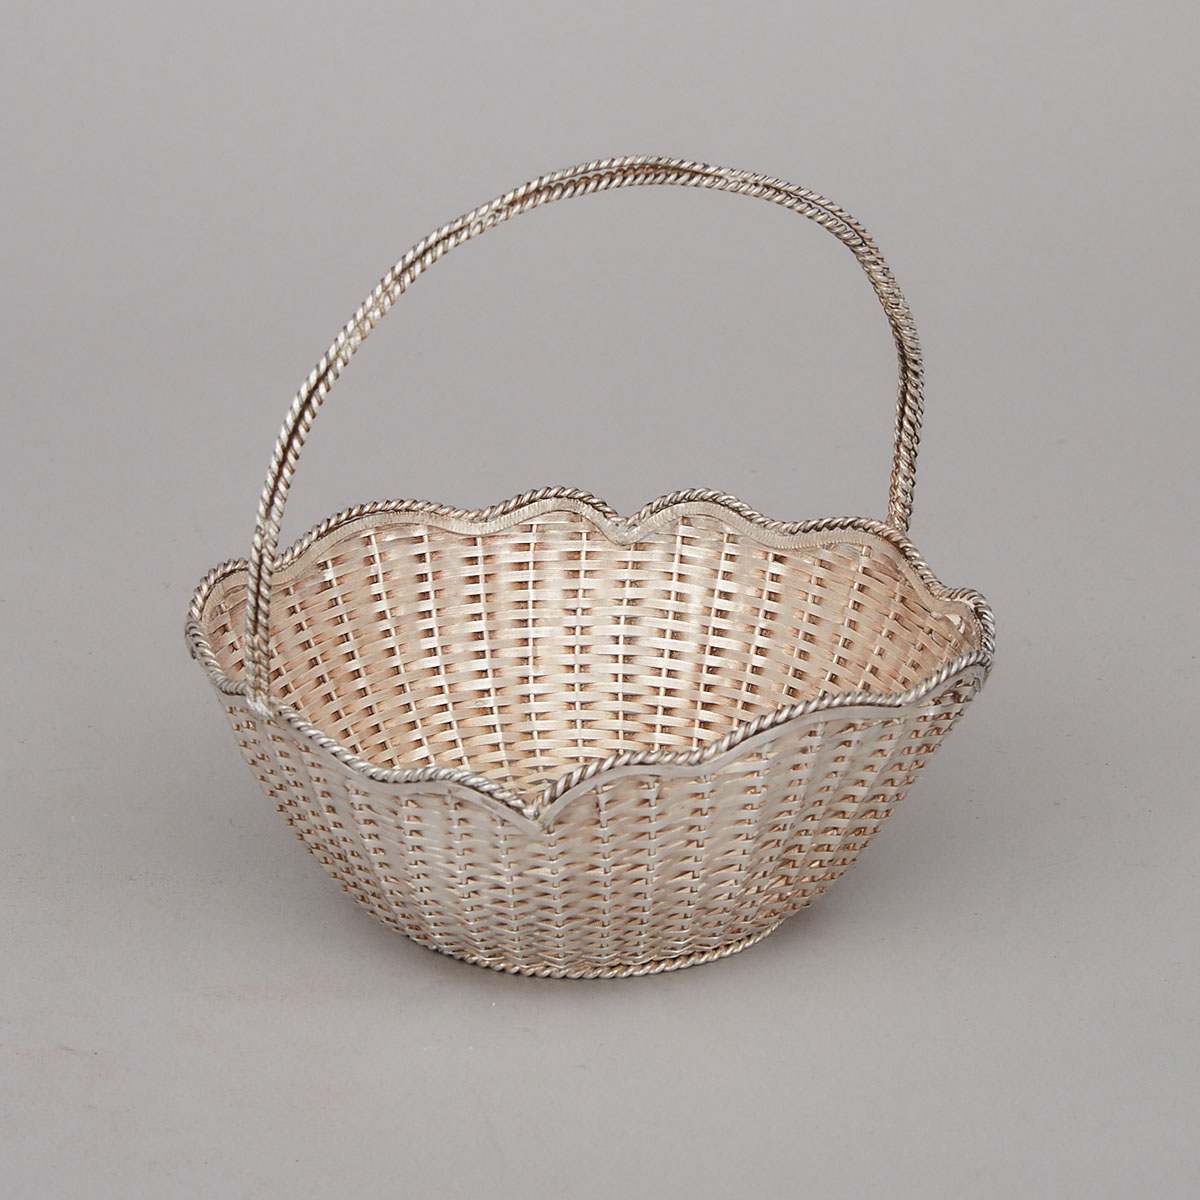 Mexican Silver Woven Basket, Alfredo Villasana, Taxco, 20th century